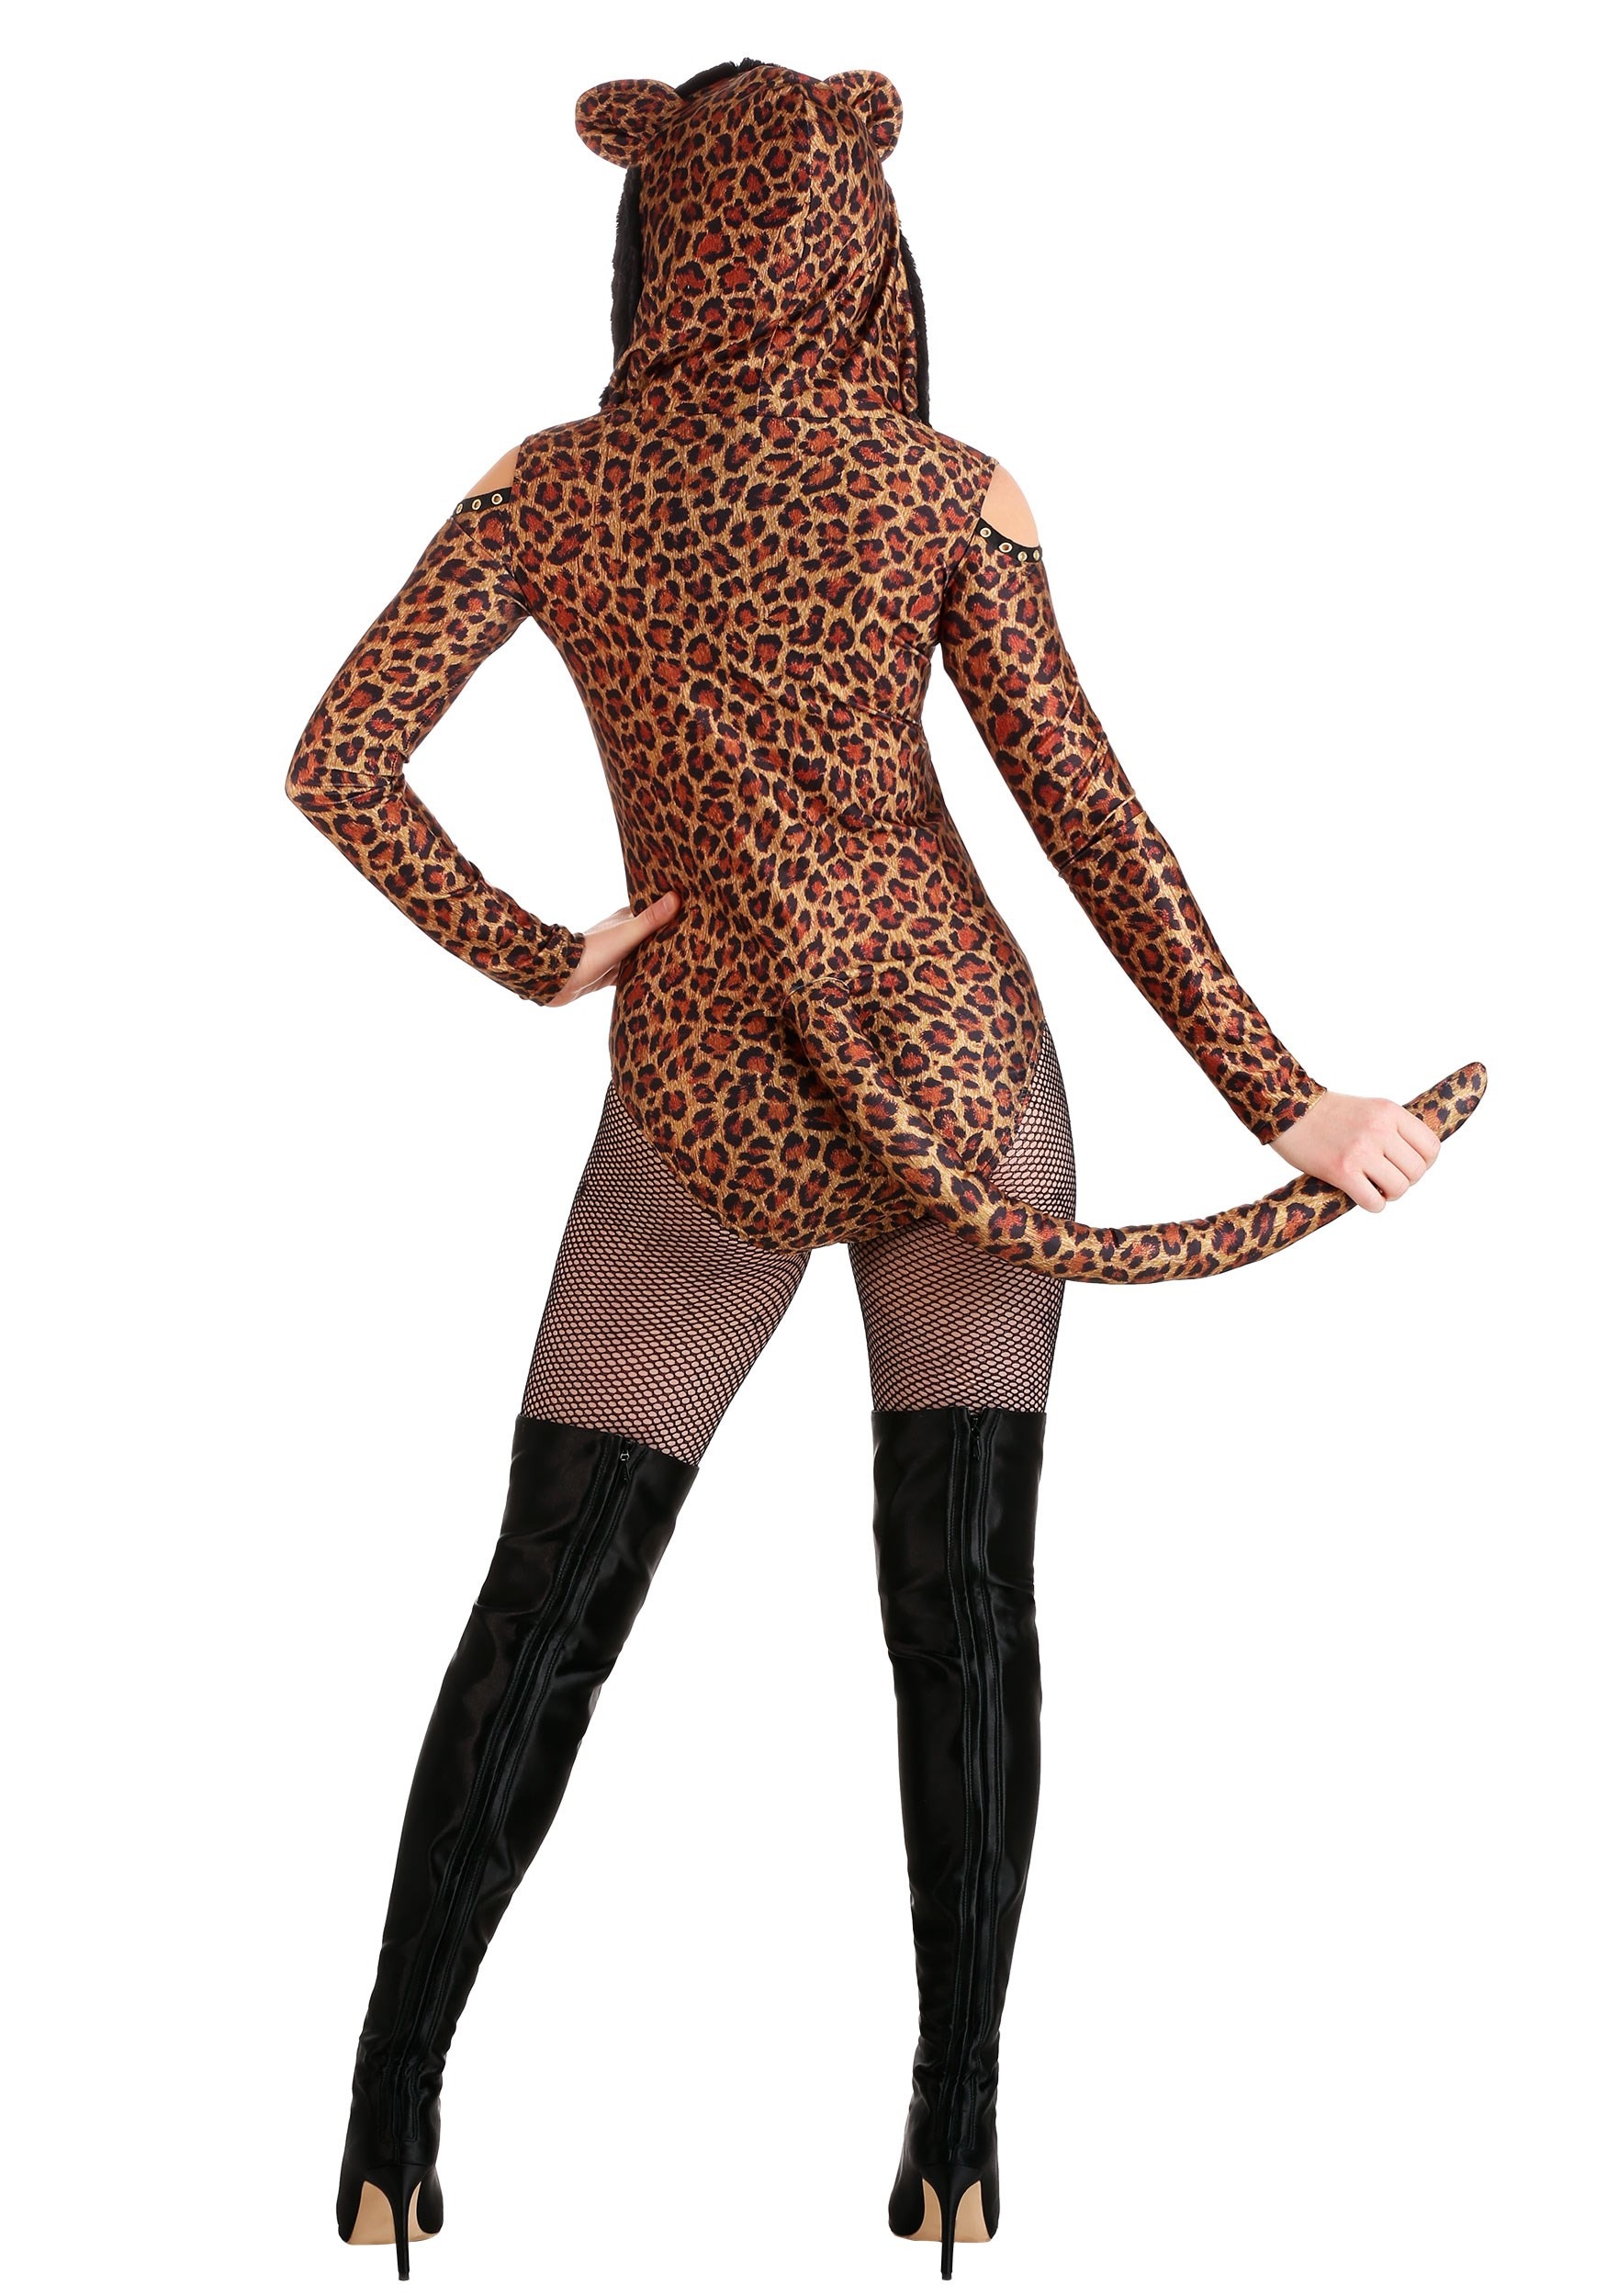 Leopard Leotard Fancy Dress Costume For Women